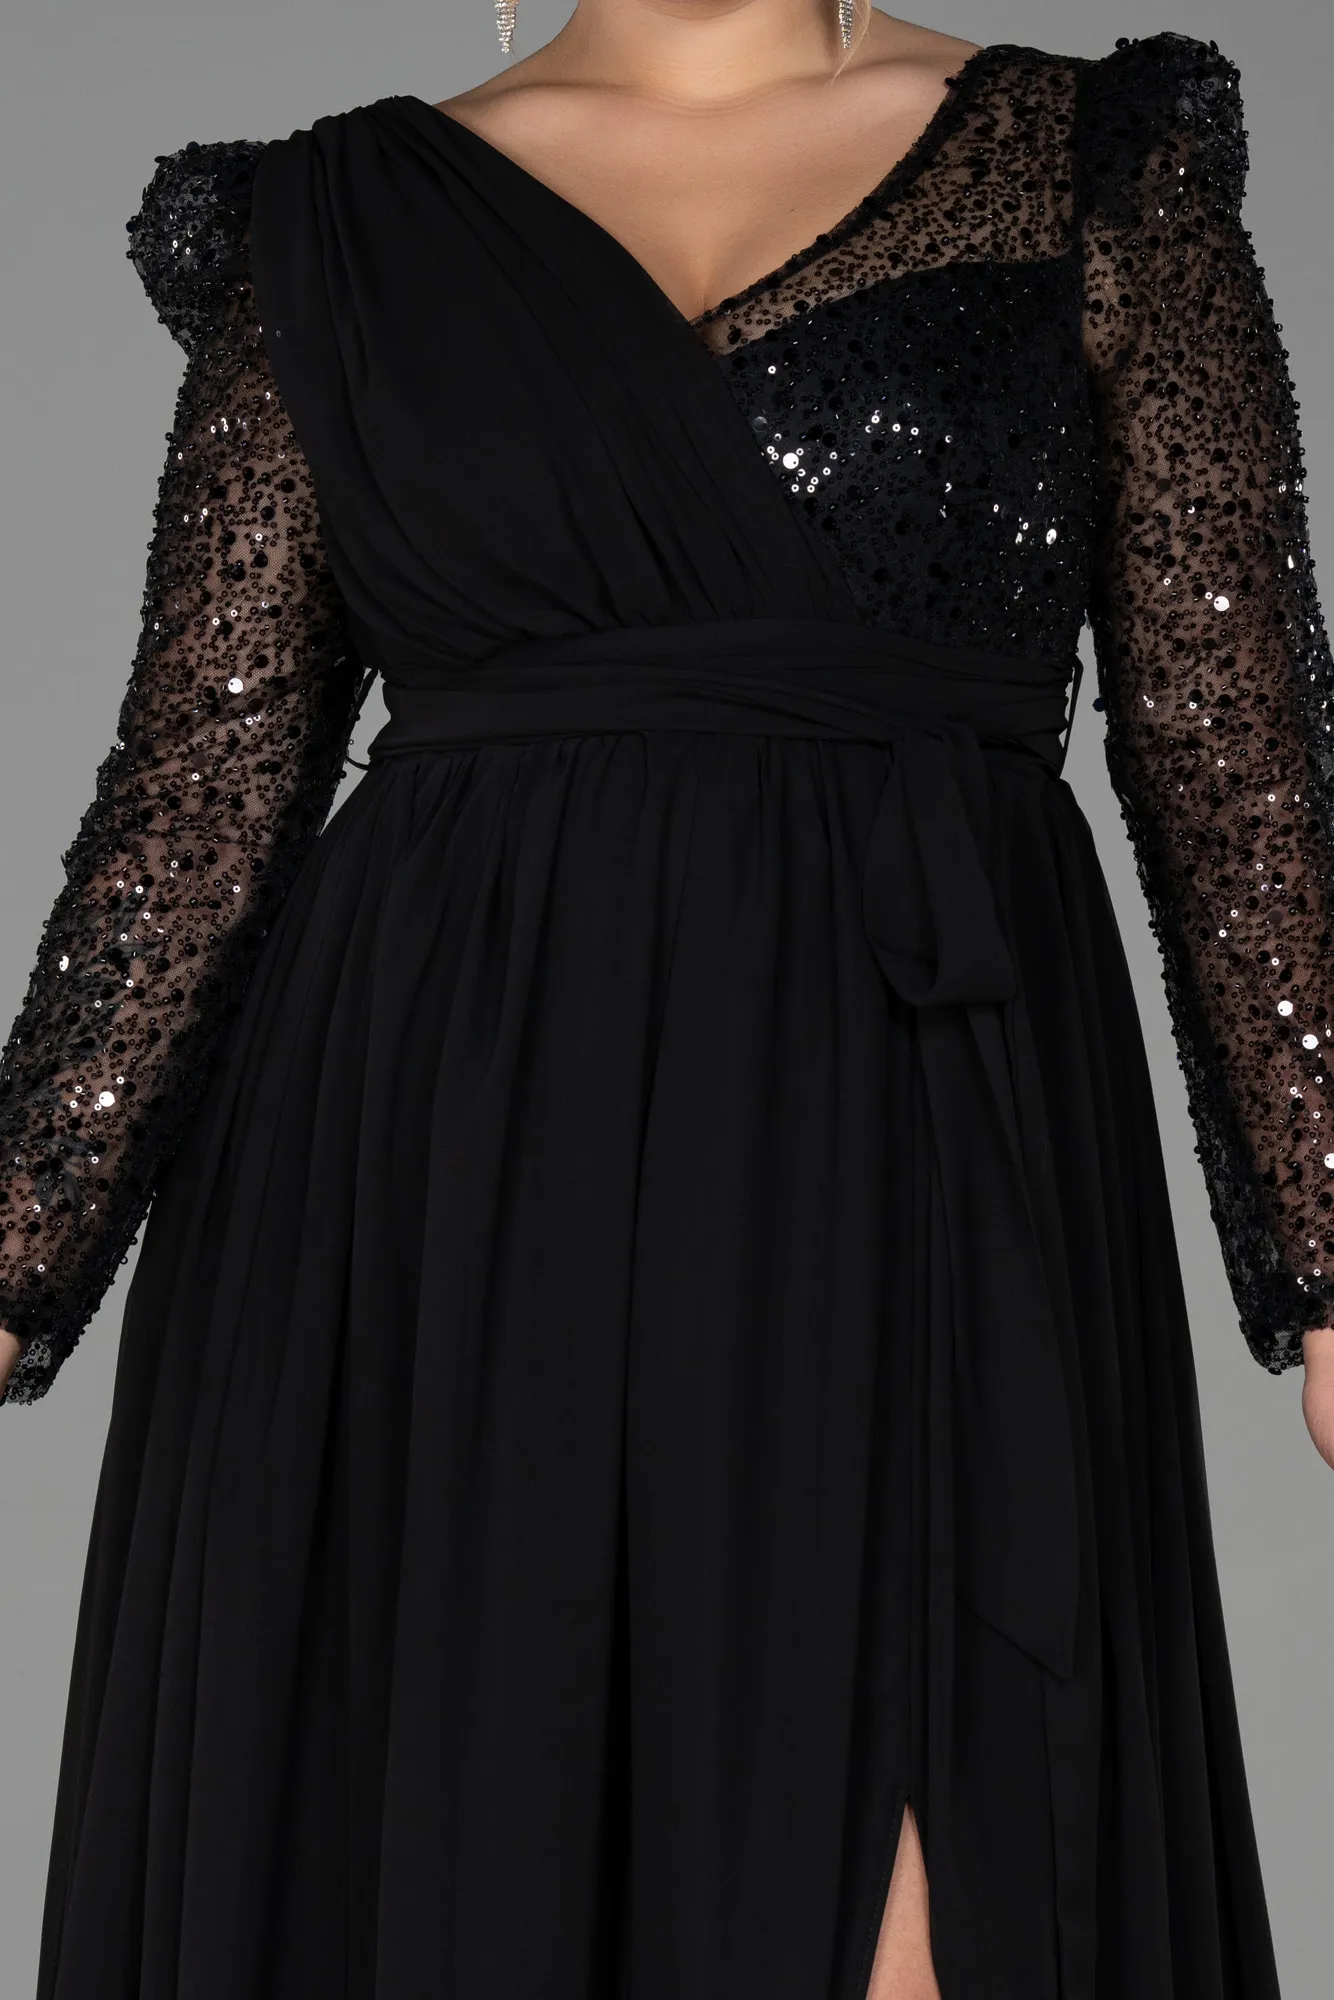 Black-Long Chiffon Plus Size Evening Dress ABU3186